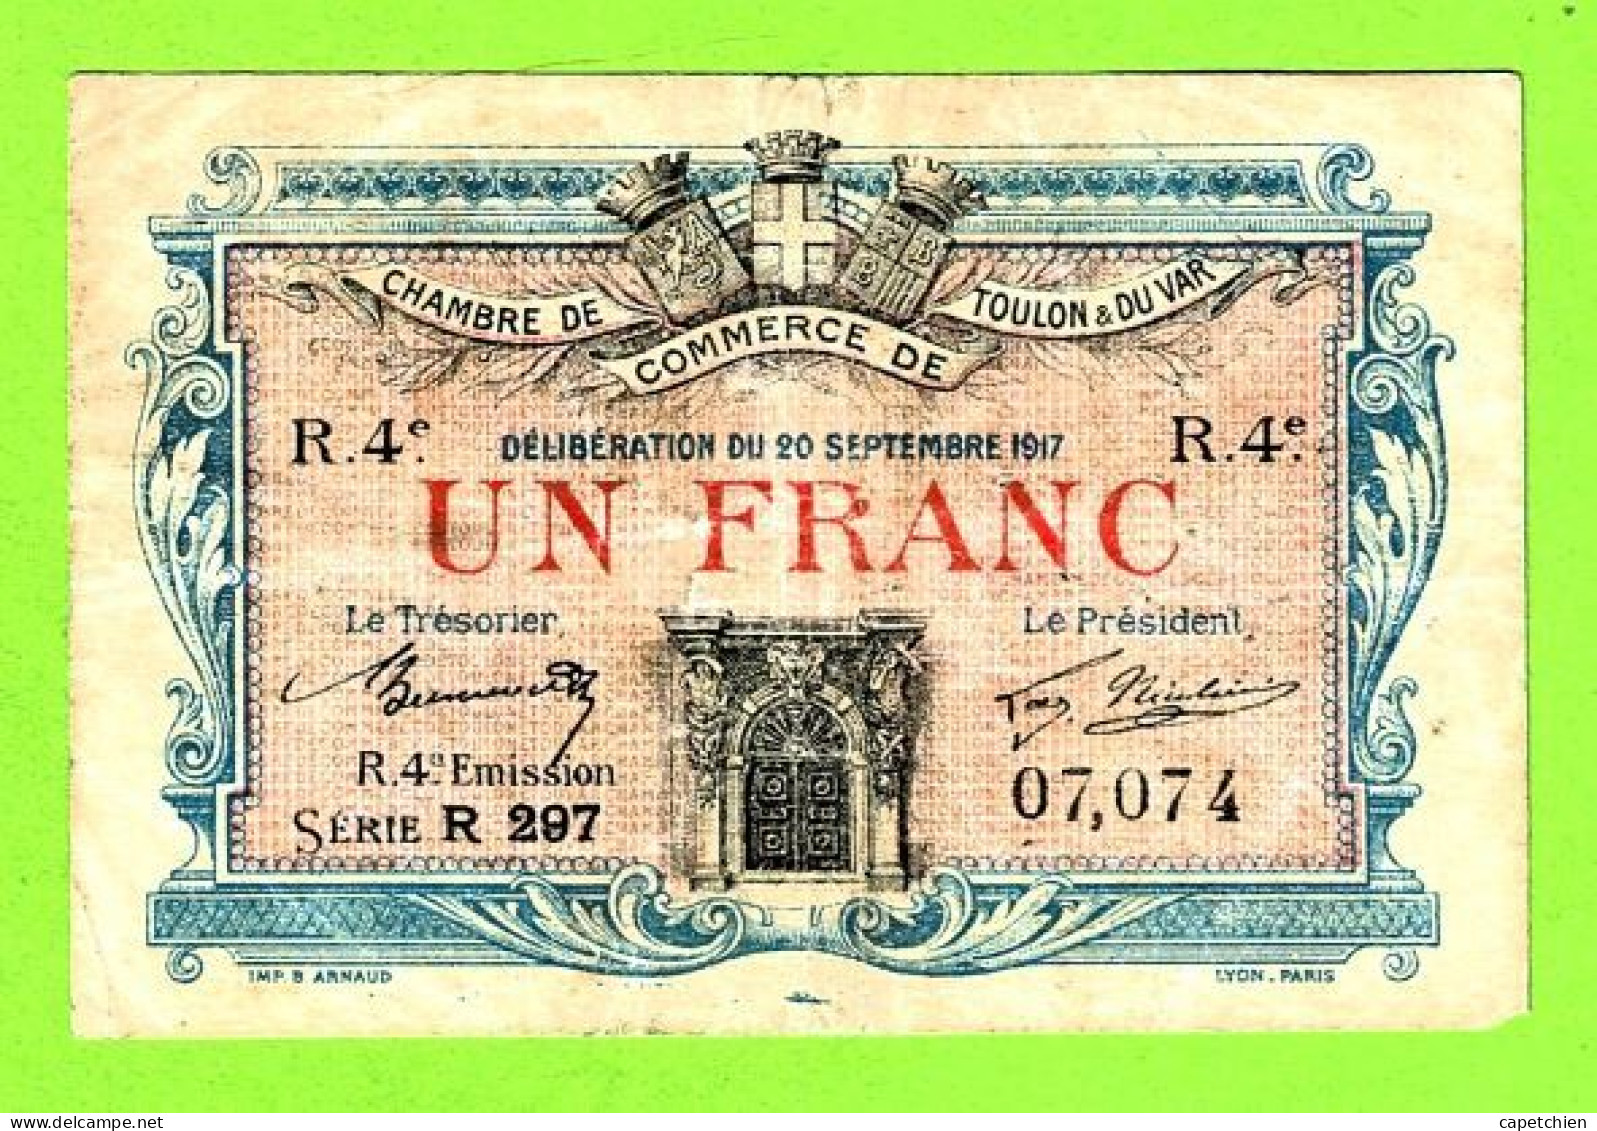 FRANCE/ CHAMBRE De COMMERCE De TOULON Et Du VAR / 1 FRANC/ 20 SEPTEMBRE 1917 / 07,074 / 4 Eme SERIE R 297 - Chambre De Commerce